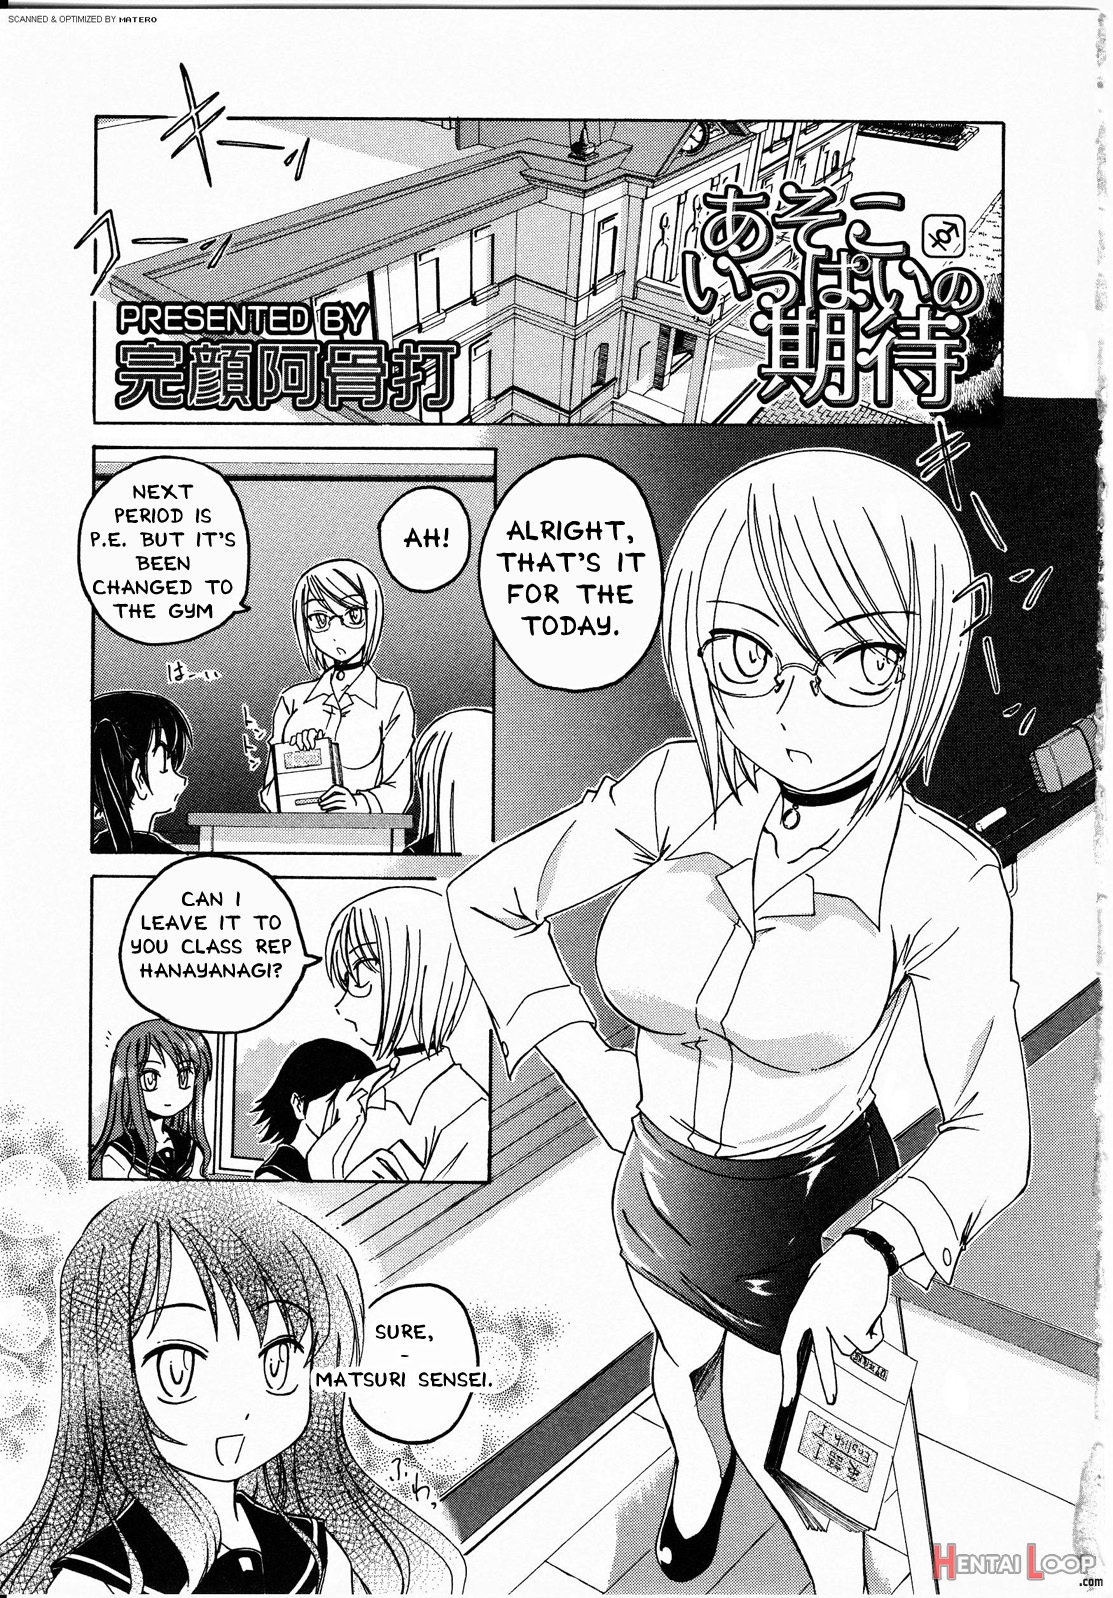 Futanarikko Love 8 page 3